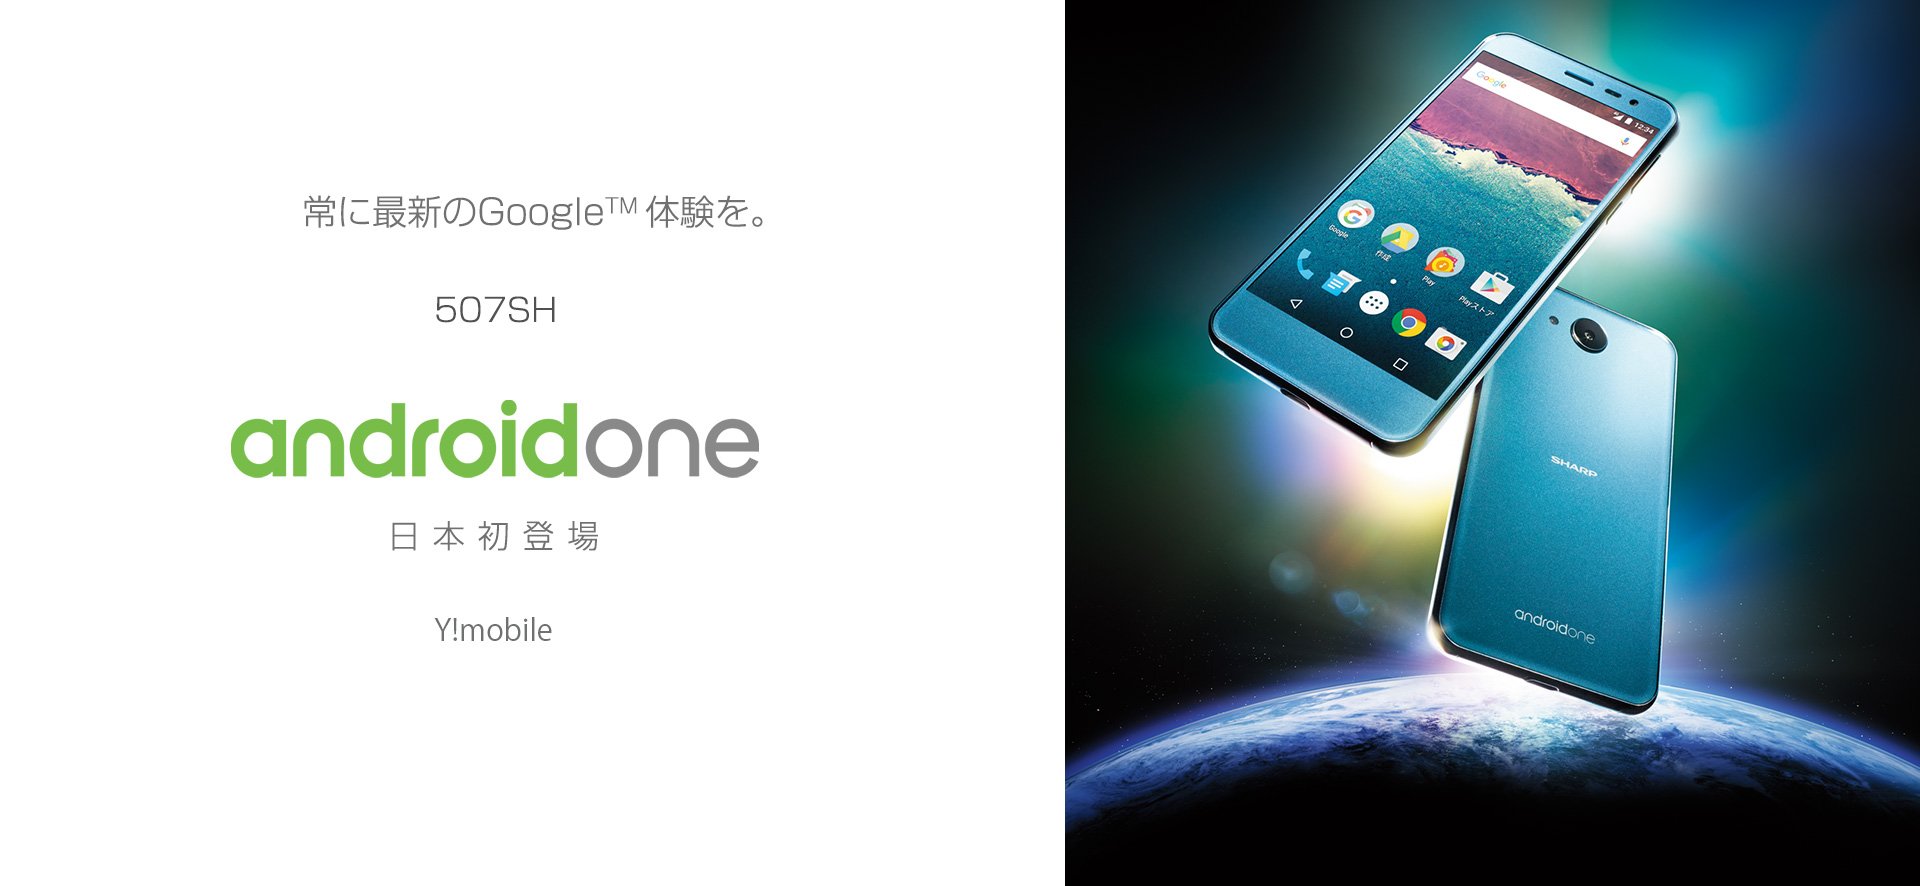 Sharp เปิดตัวสมาร์ทโฟน Android One ในญี่ปุ่น